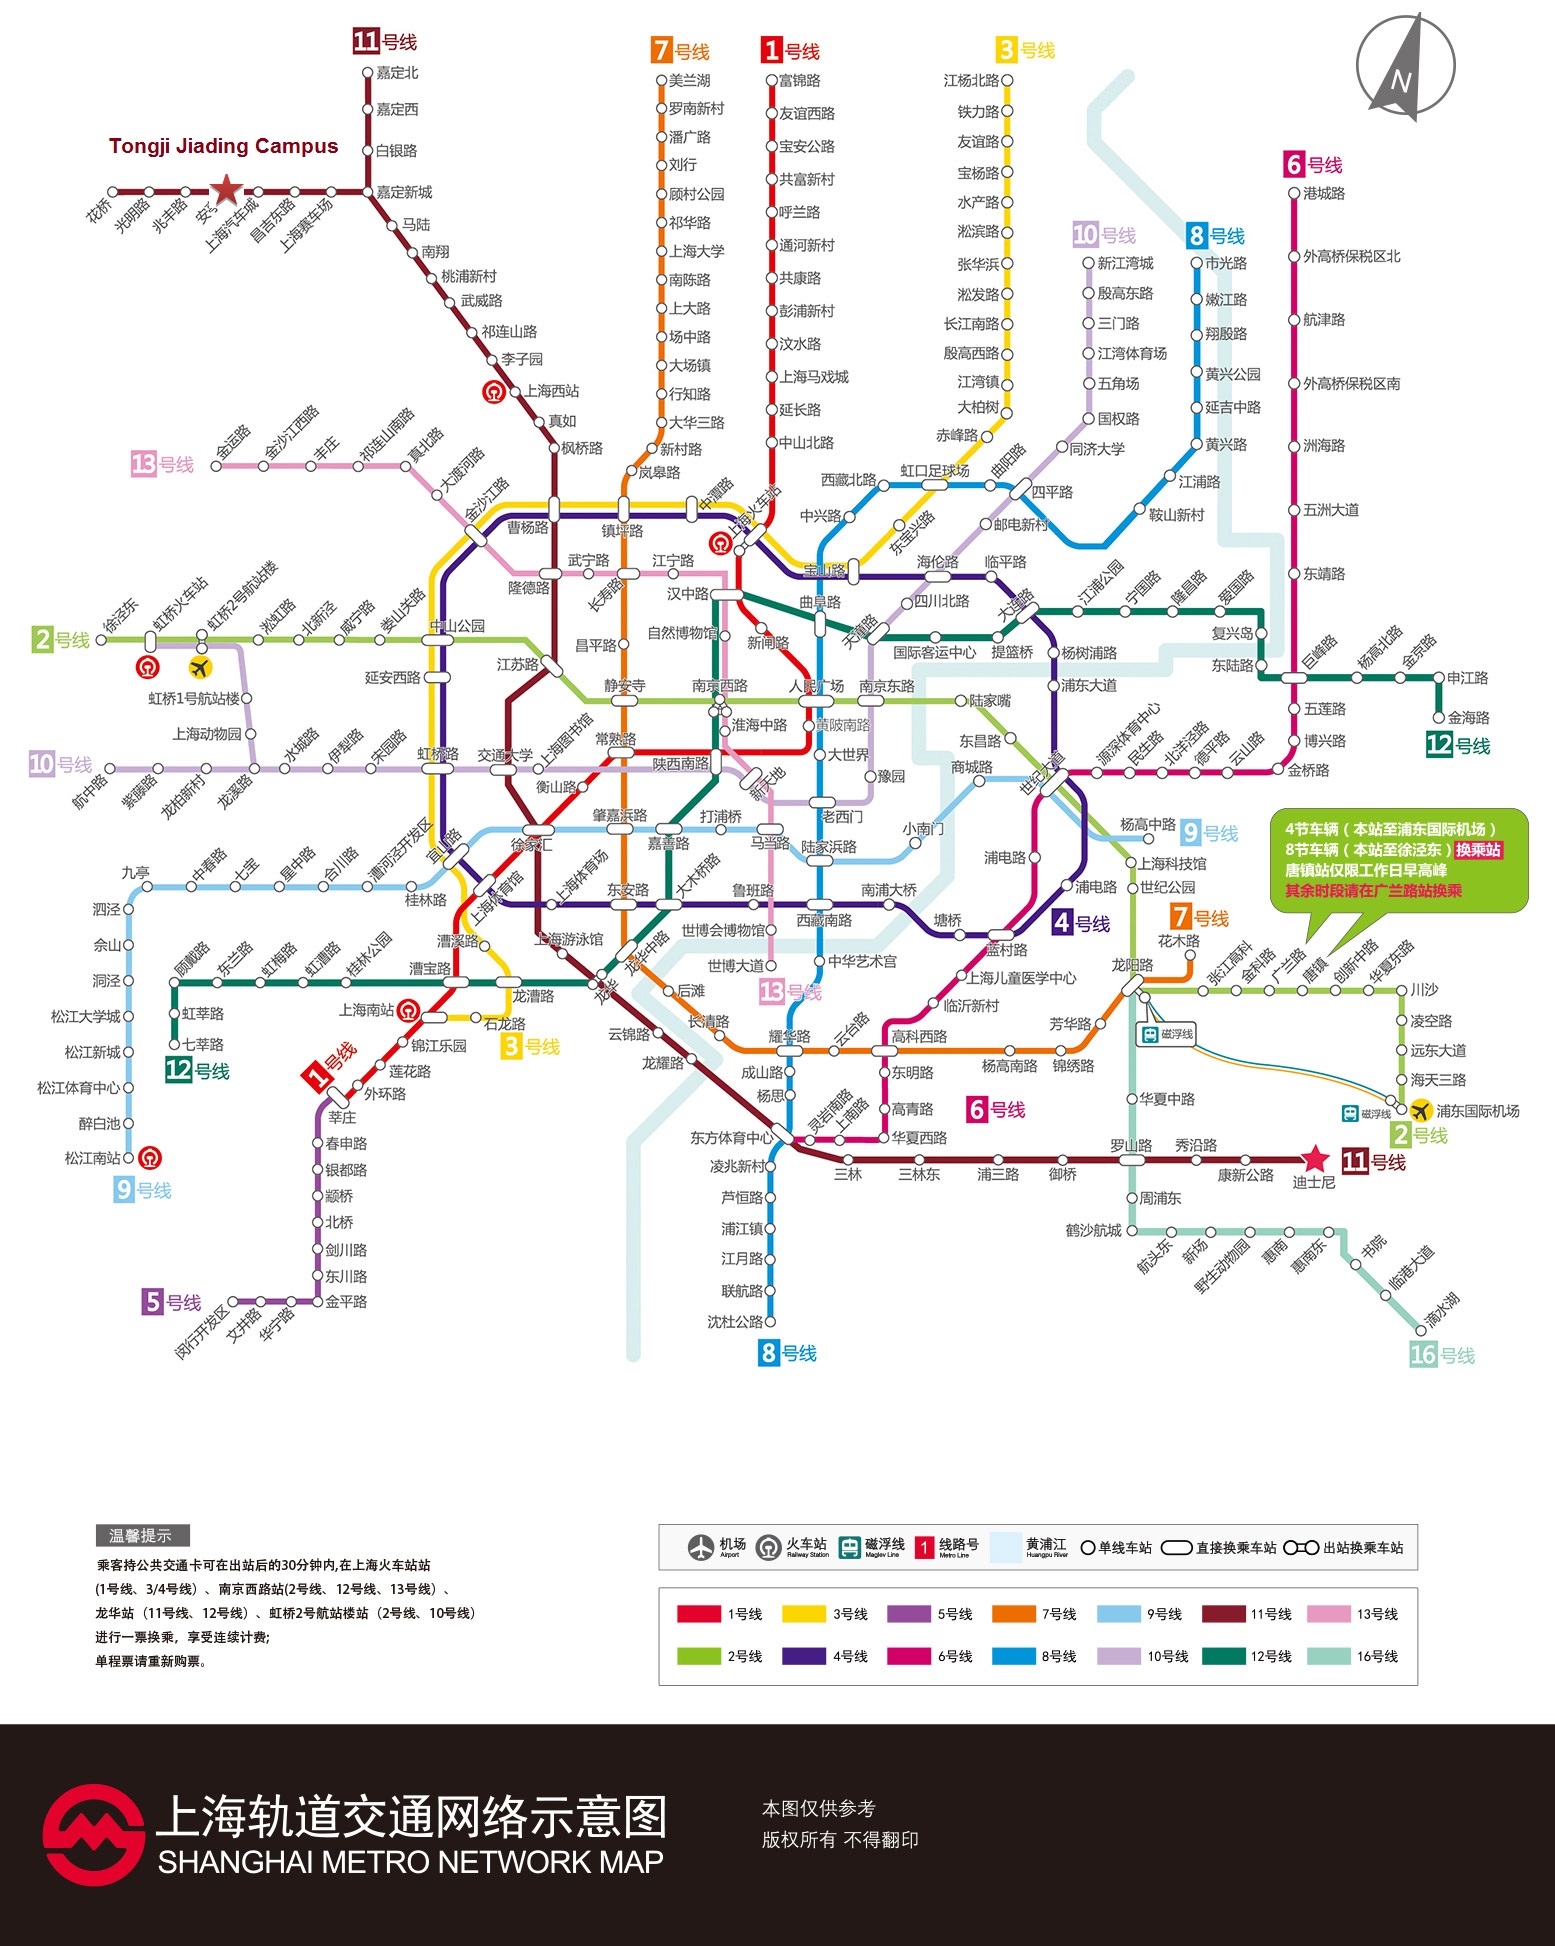 Shanghai Subway Map 2016